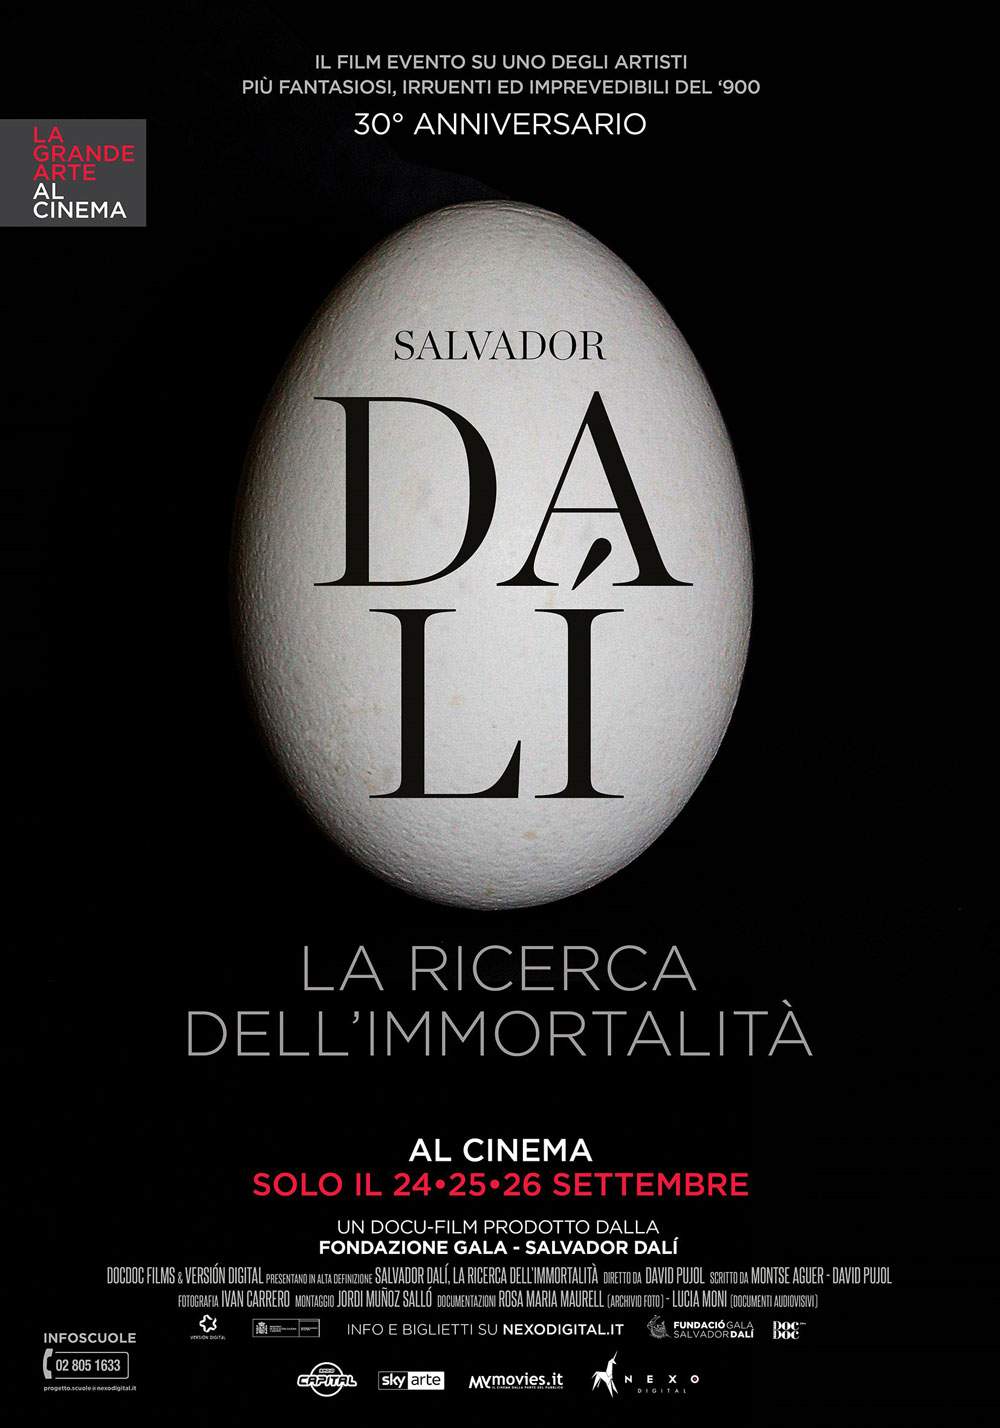 Il nuovo cartellone 2018 de La Grande Arte al Cinema si apre con Dalí